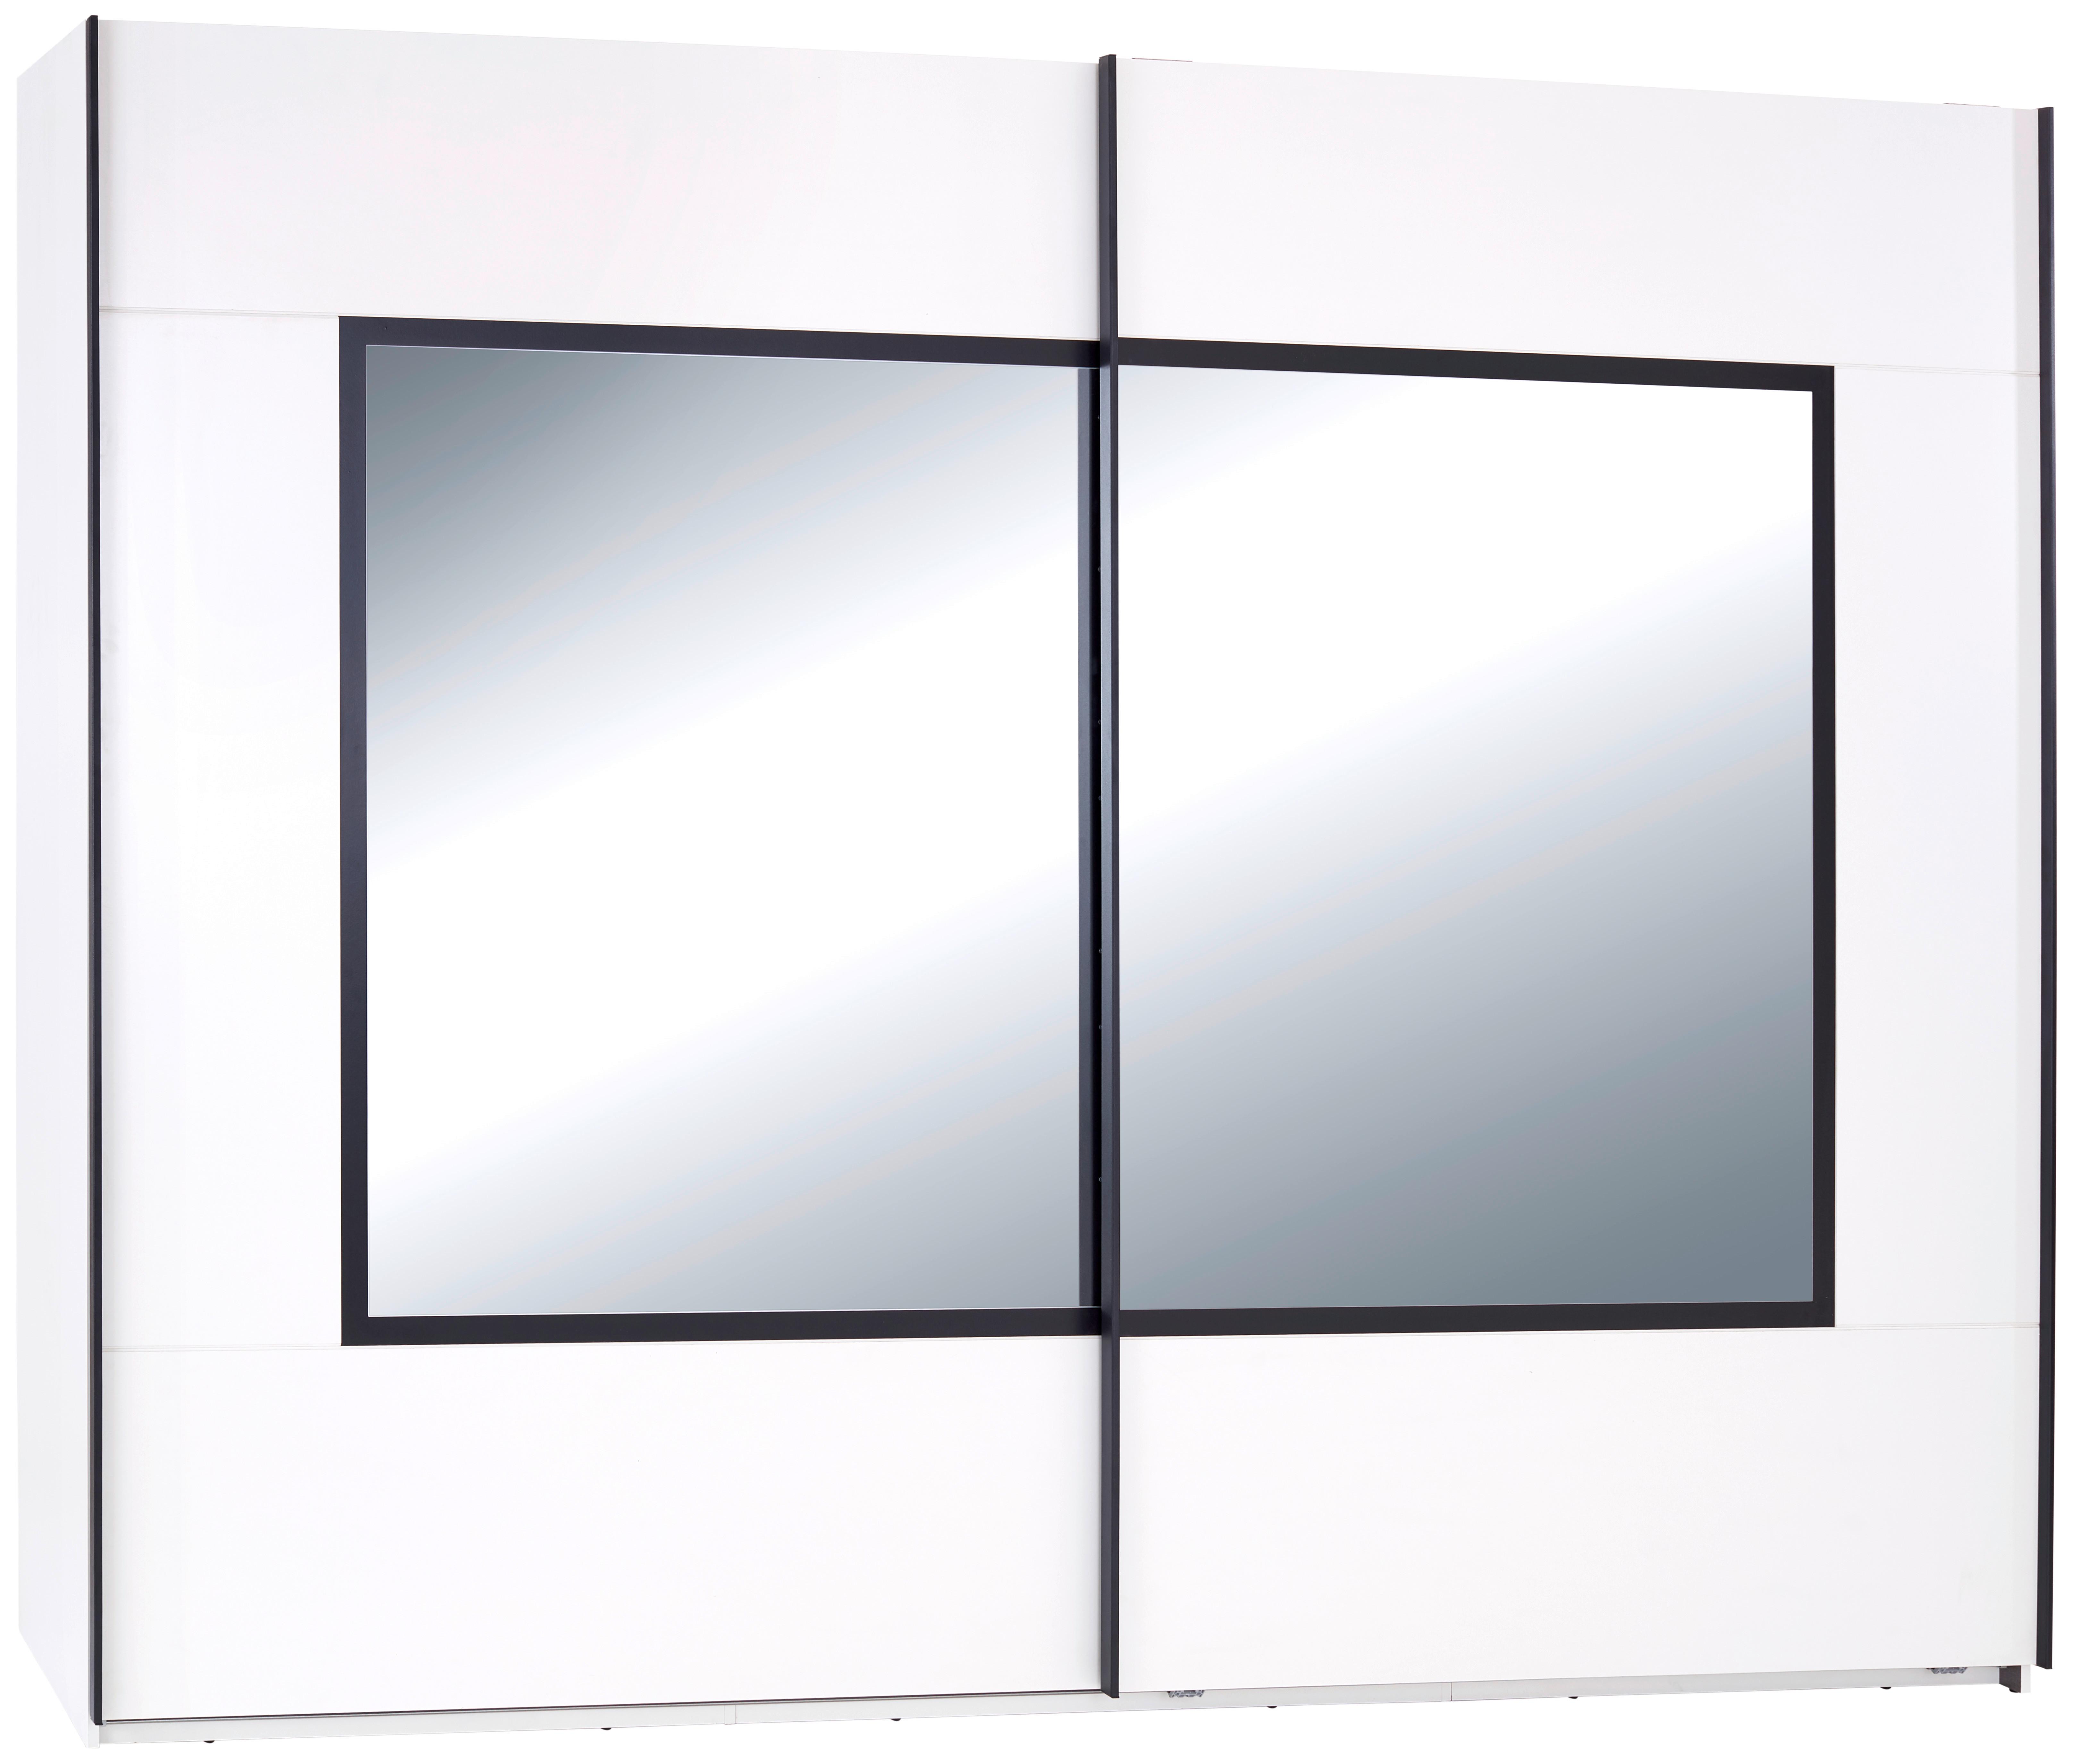 Dulap cu uși culisante Toledo - alb/negru, Modern, sticlă/material pe bază de lemn (270/210/60cm)